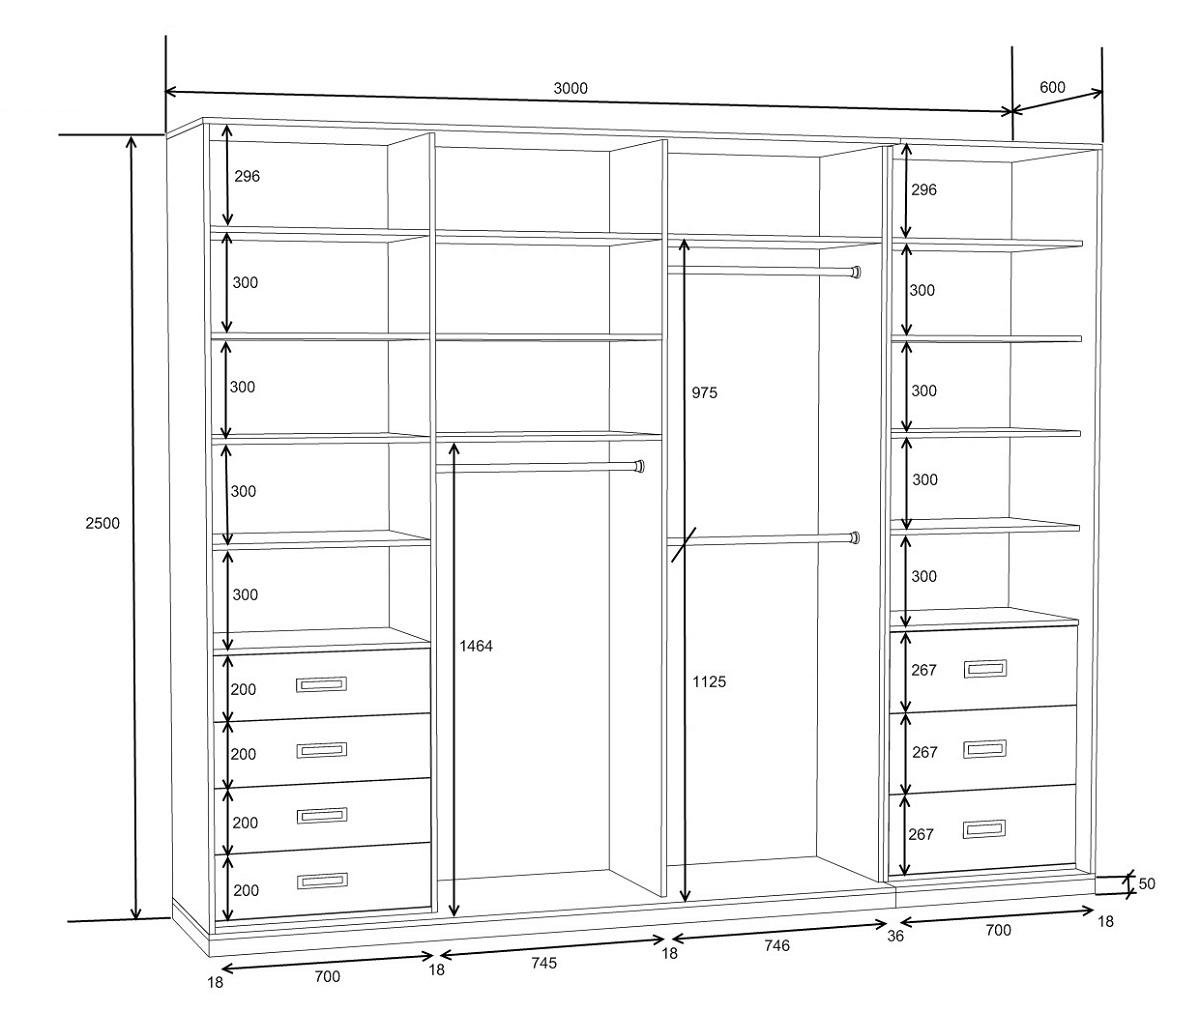 Чертежи шкафов: Шкаф-купе своими руками - чертежи описание (56 фото): проект и схема с размерами, пошаговая инструкция